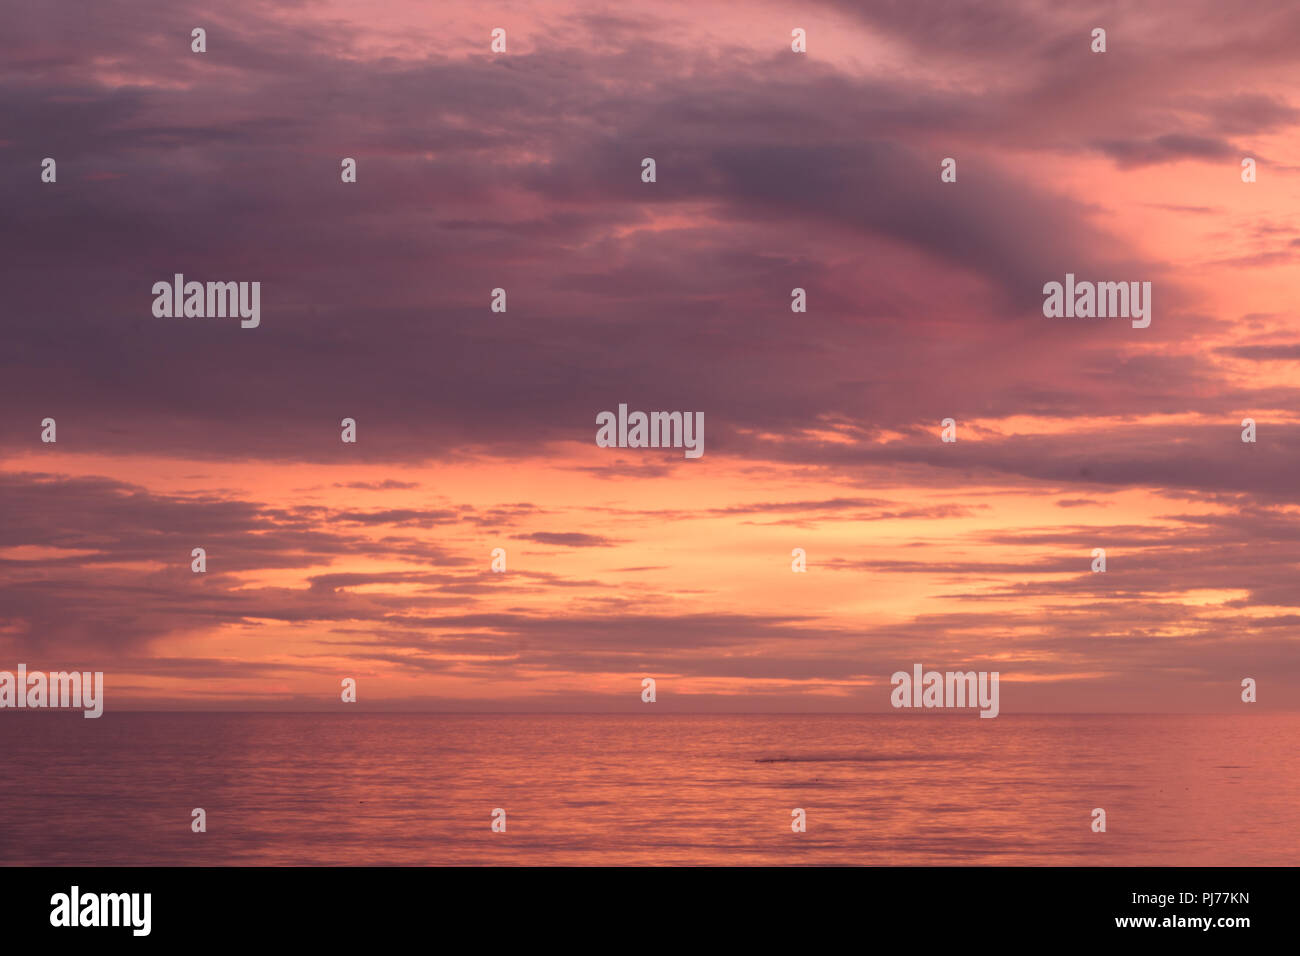 Dramatischer Sonnenuntergang Marine, Orange, Blau, Gelb, Magenta, gold Himmel im Meer Pazifik reflektiert, Hintergrund Foto von Sonne über Horizont ami Stockfoto